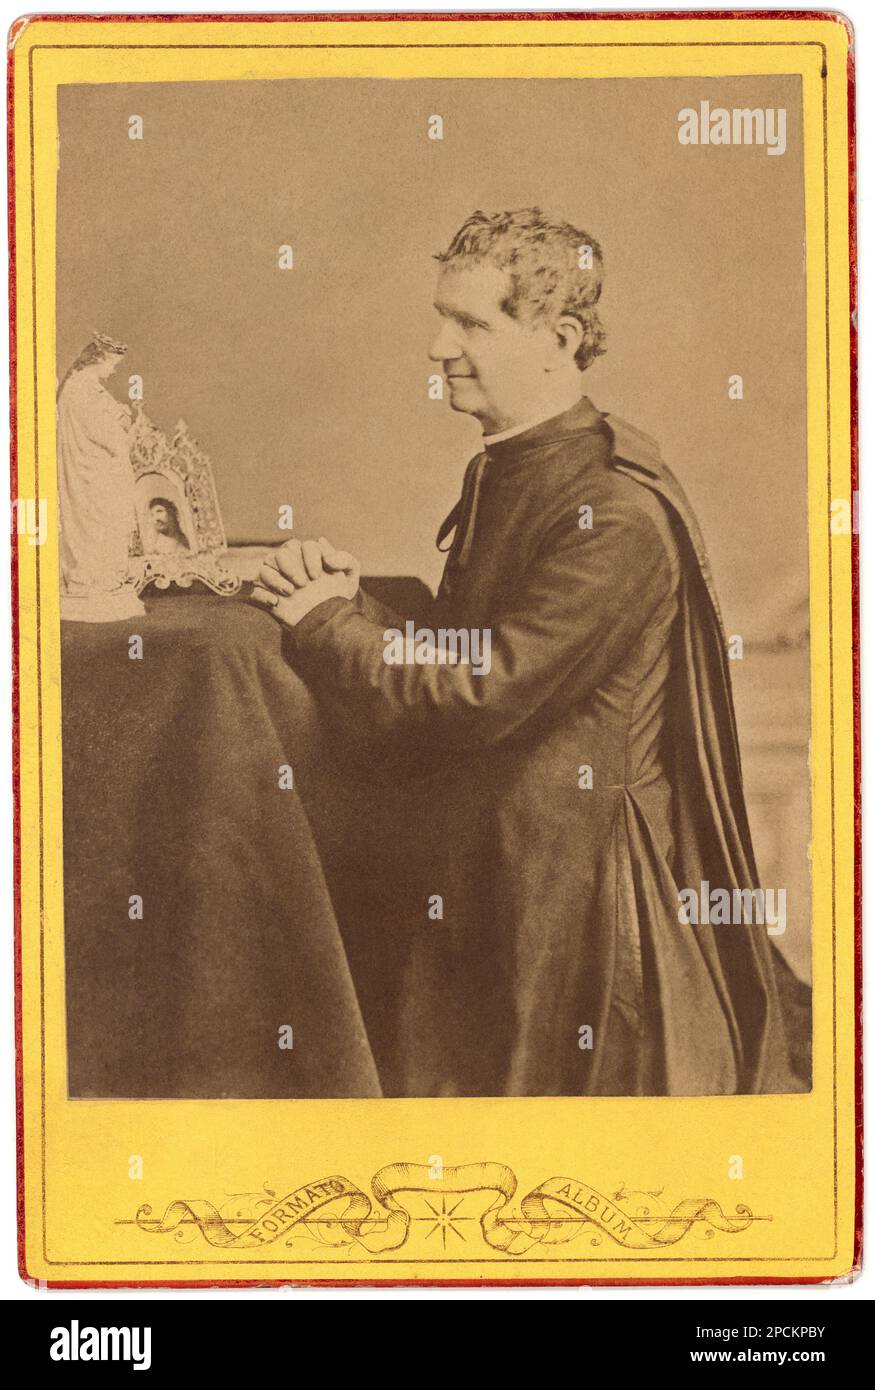 The italian Saint  Don GIOVANNI BOSCO (  1815 - 1888 )-  SANTO - san - Sant - RELIGIONE CATTOLICA - CATHOLIC RELIGION - blessed - collar - colletto - prelato - prete - priest - portrait - ritratto - Roman Catholic Church  - prayer - preghiera - pray - mani giunte - profilo - profile  ----  Archivio GBB Stock Photo